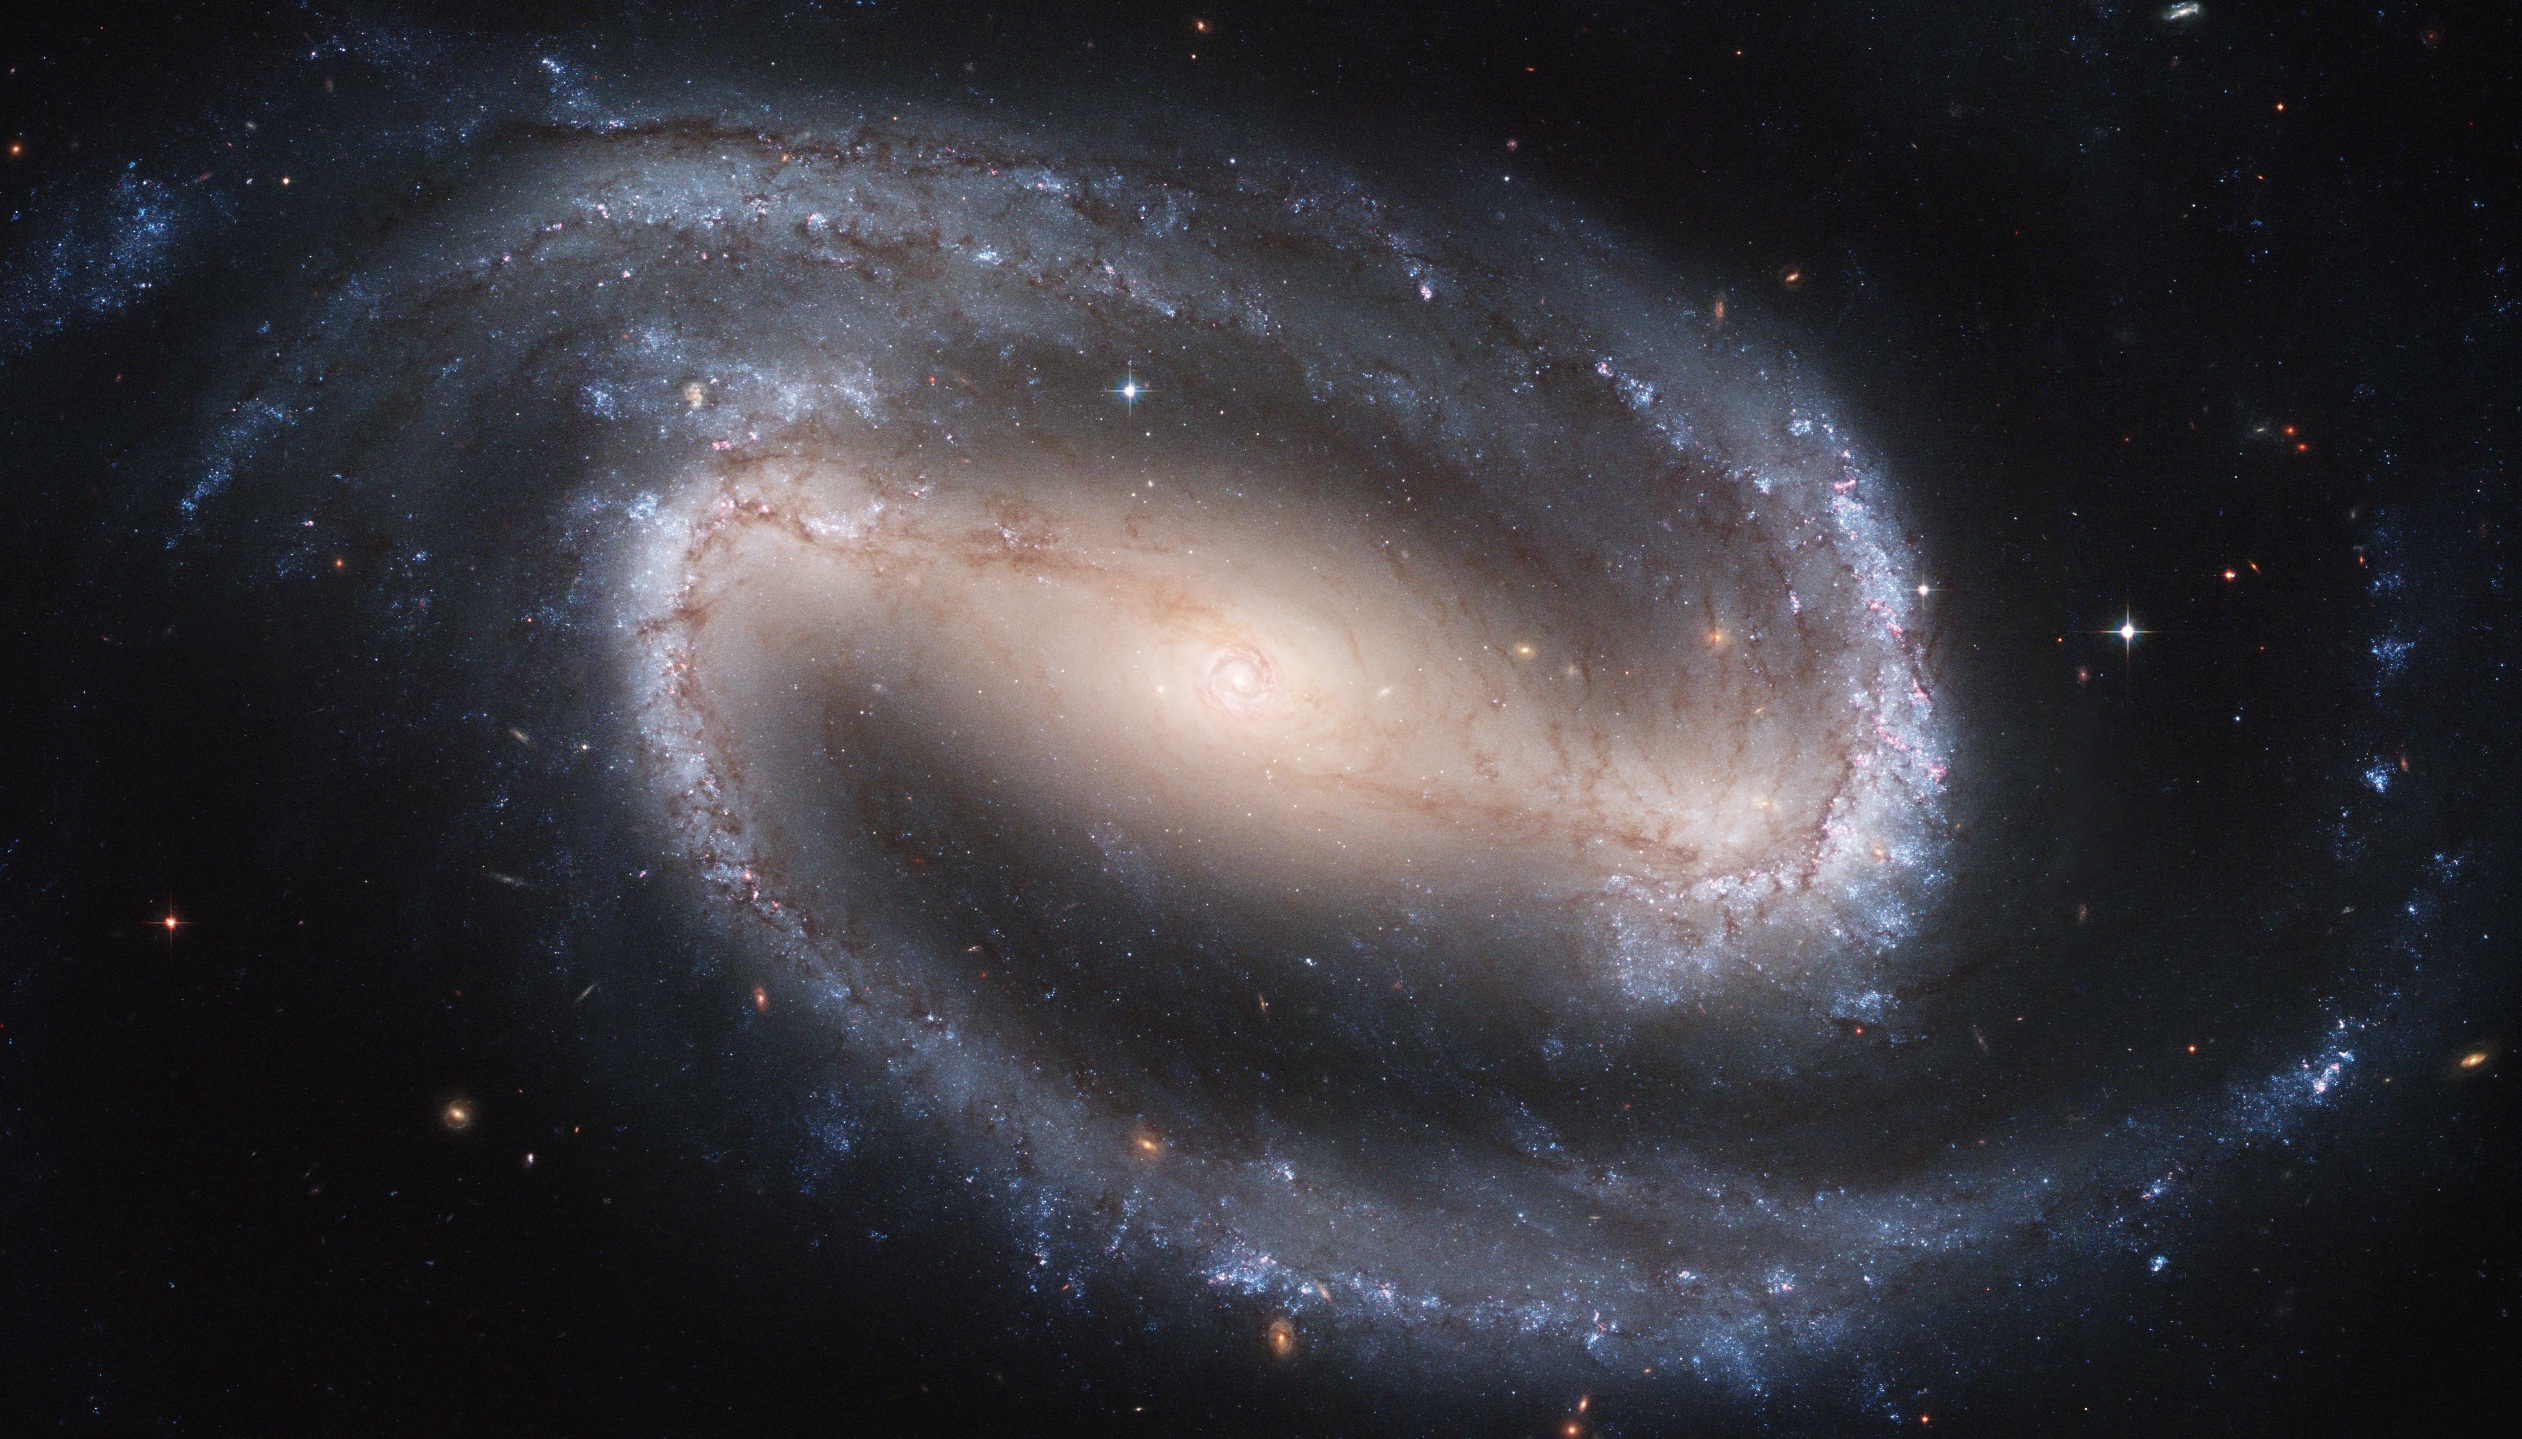 La galaxie spirale barrée NGC1300 vue par Hubble. © Nasa